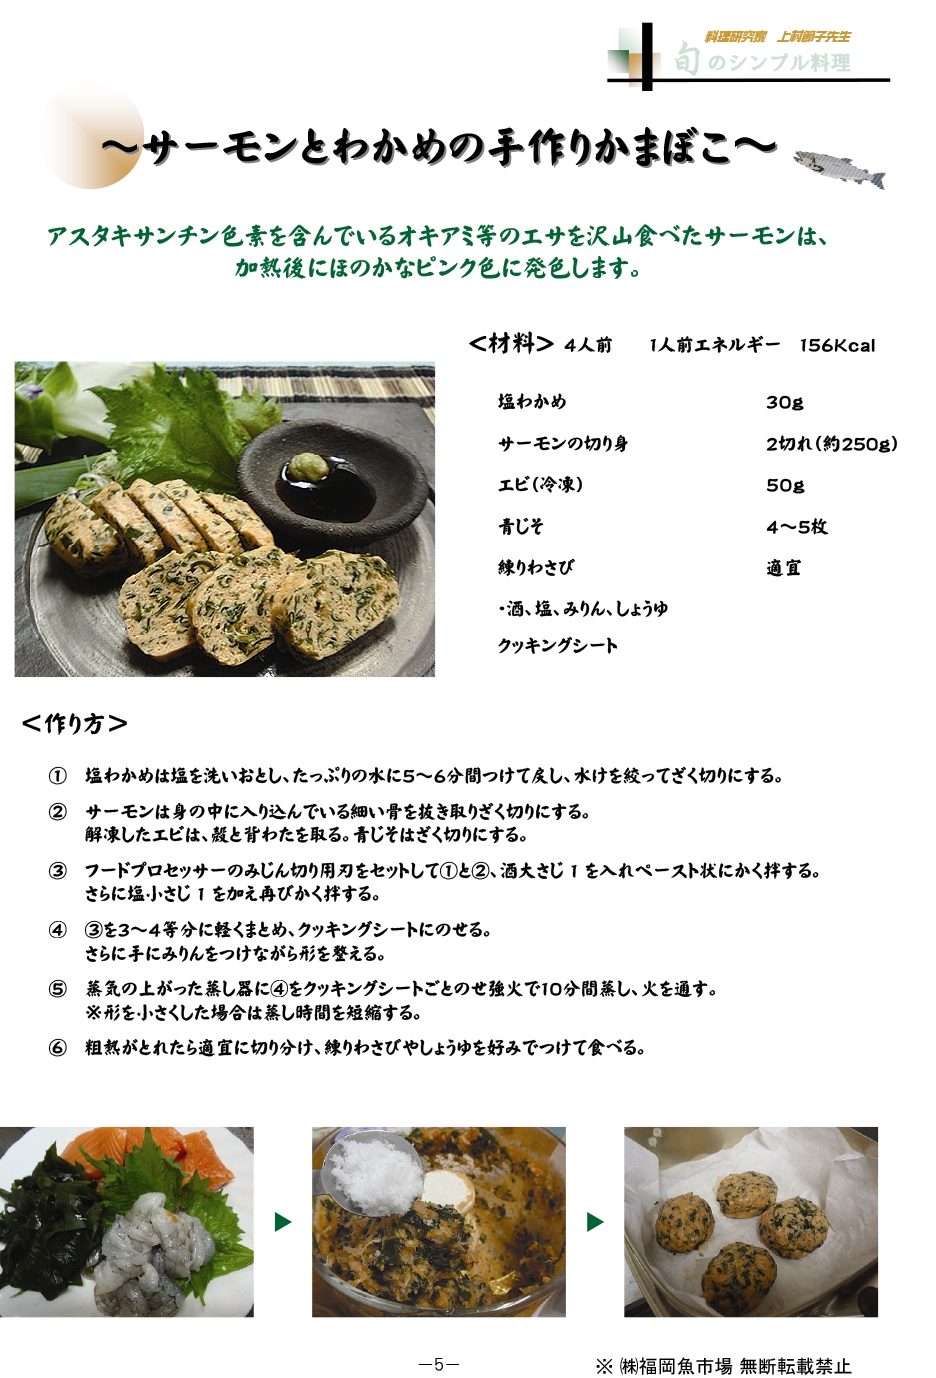 サーモンとわかめの手作りかまぼこ 旬のレシピ 福岡魚市場